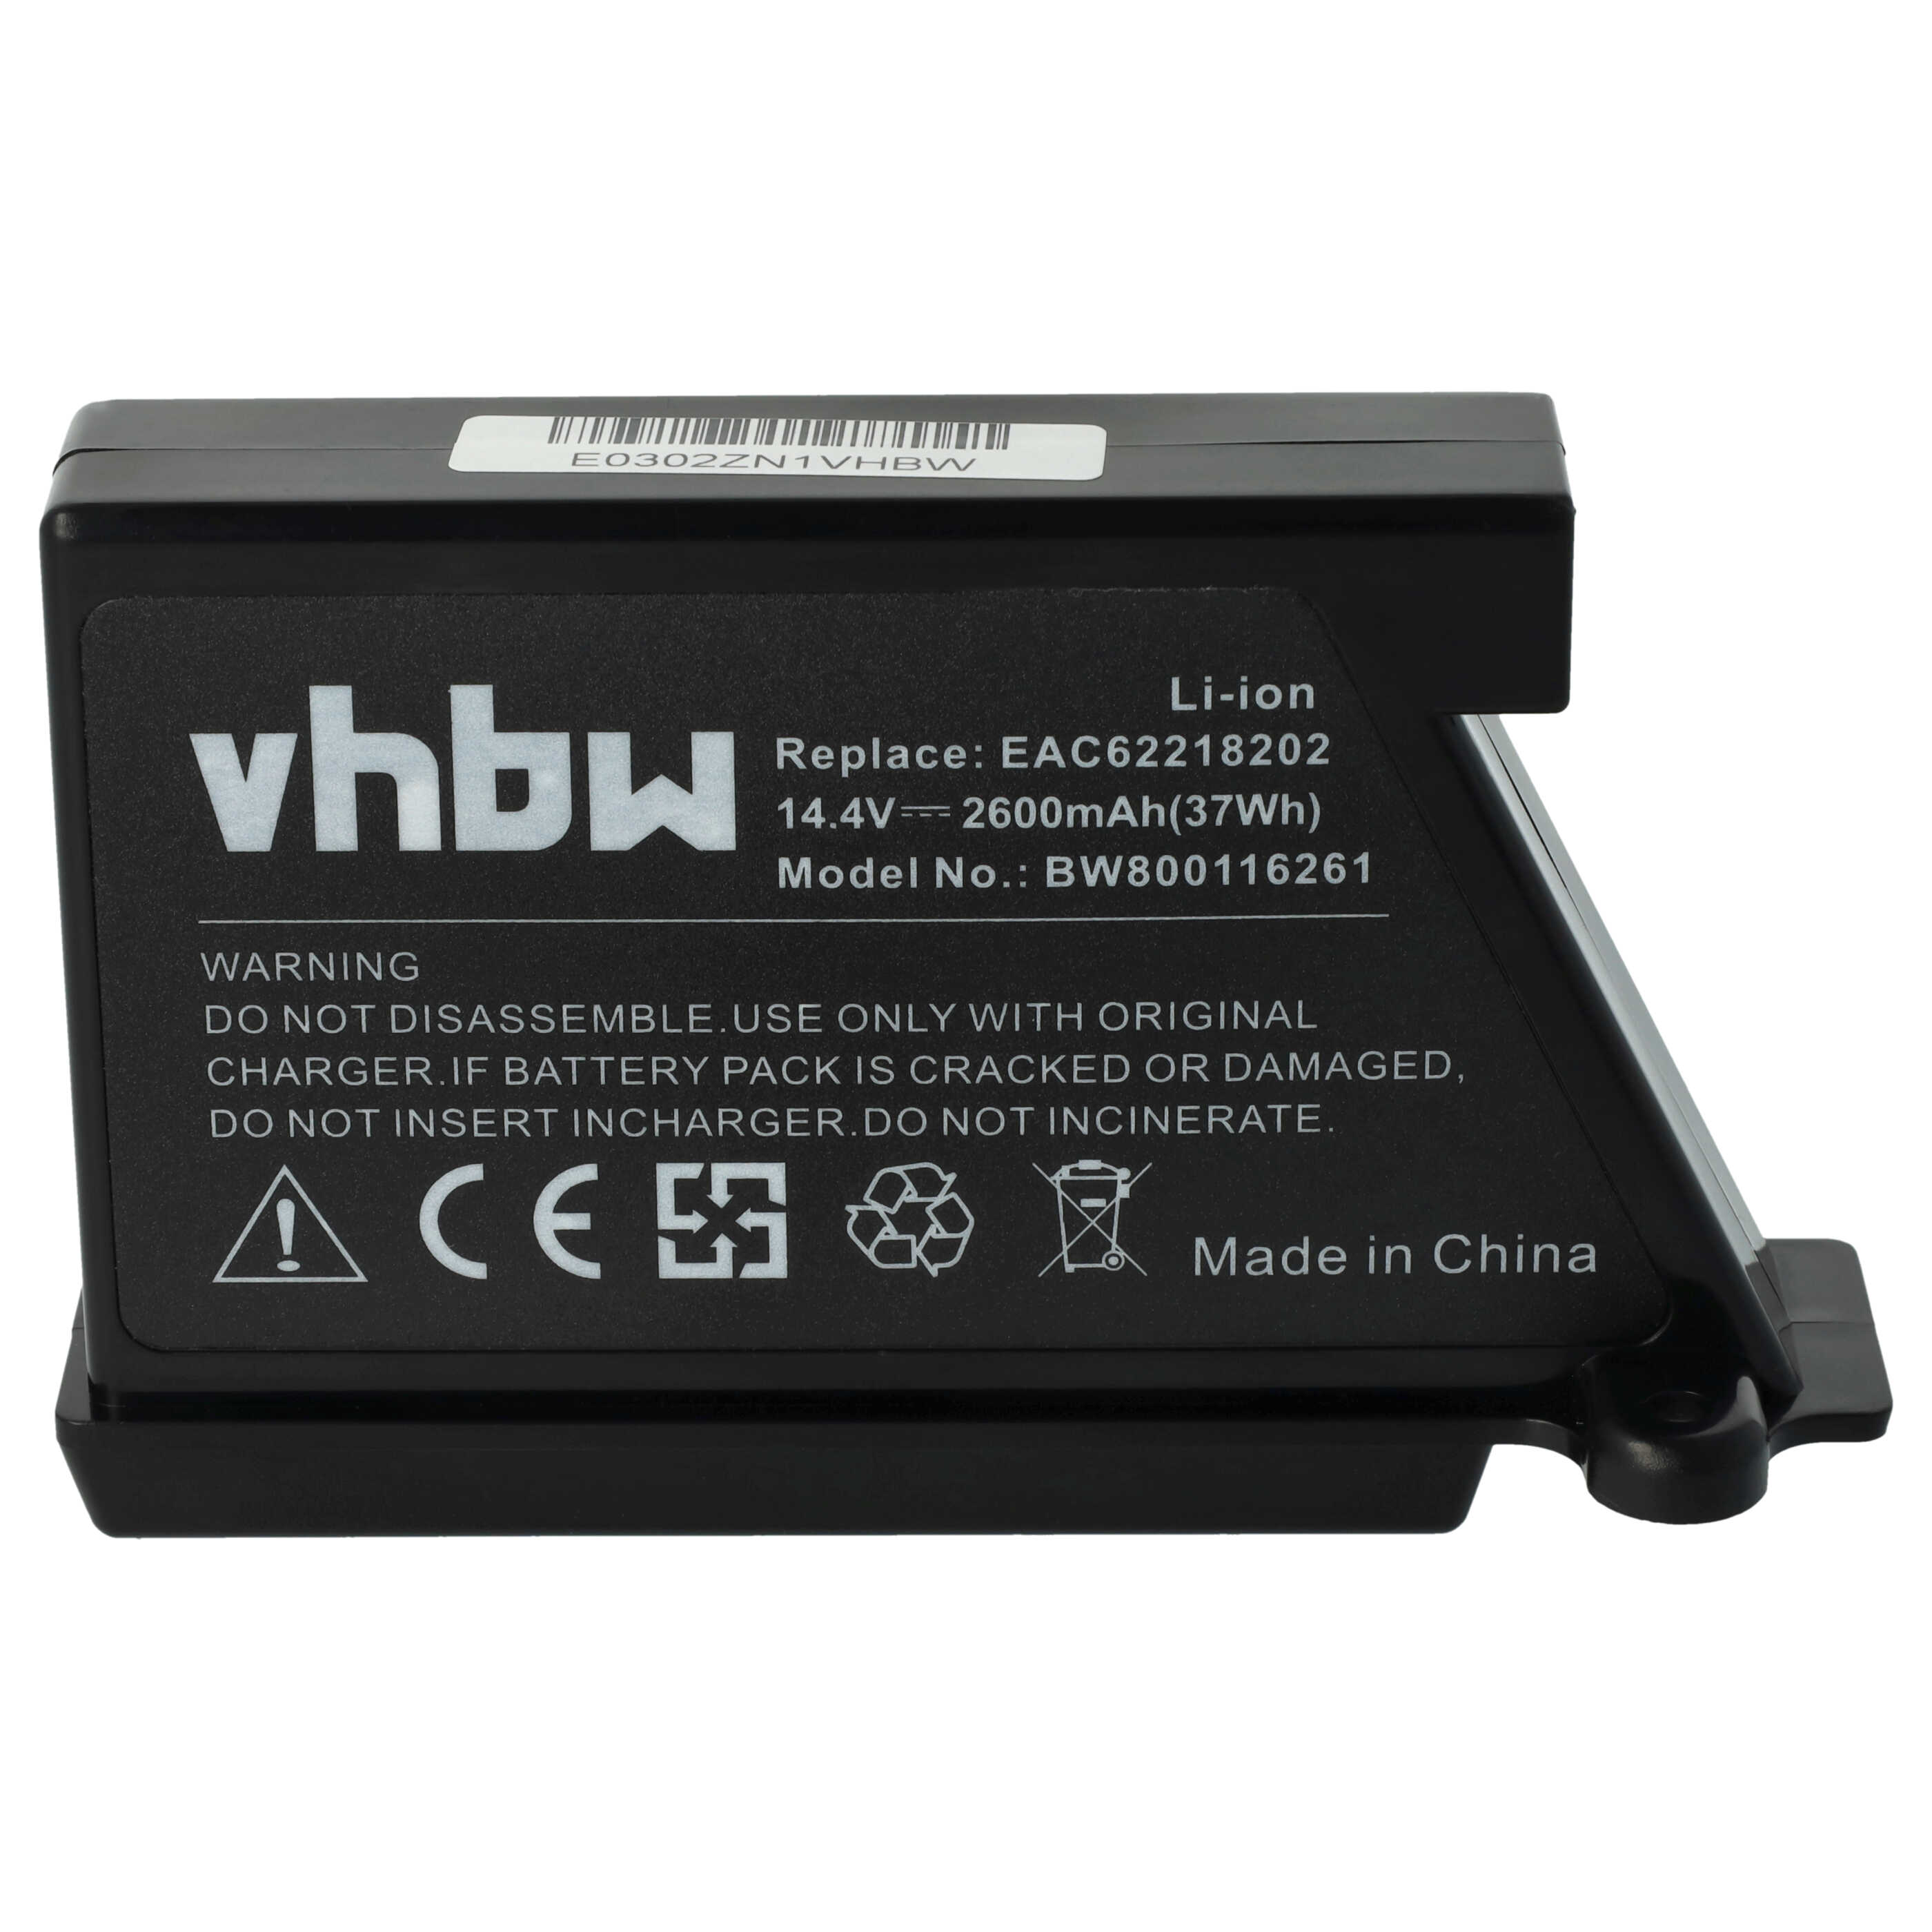 Batterie remplace LG BRL1, EAC60766102, EAC60766101, EAC60766103 pour robot aspirateur - 2600mAh 14,4V Li-ion